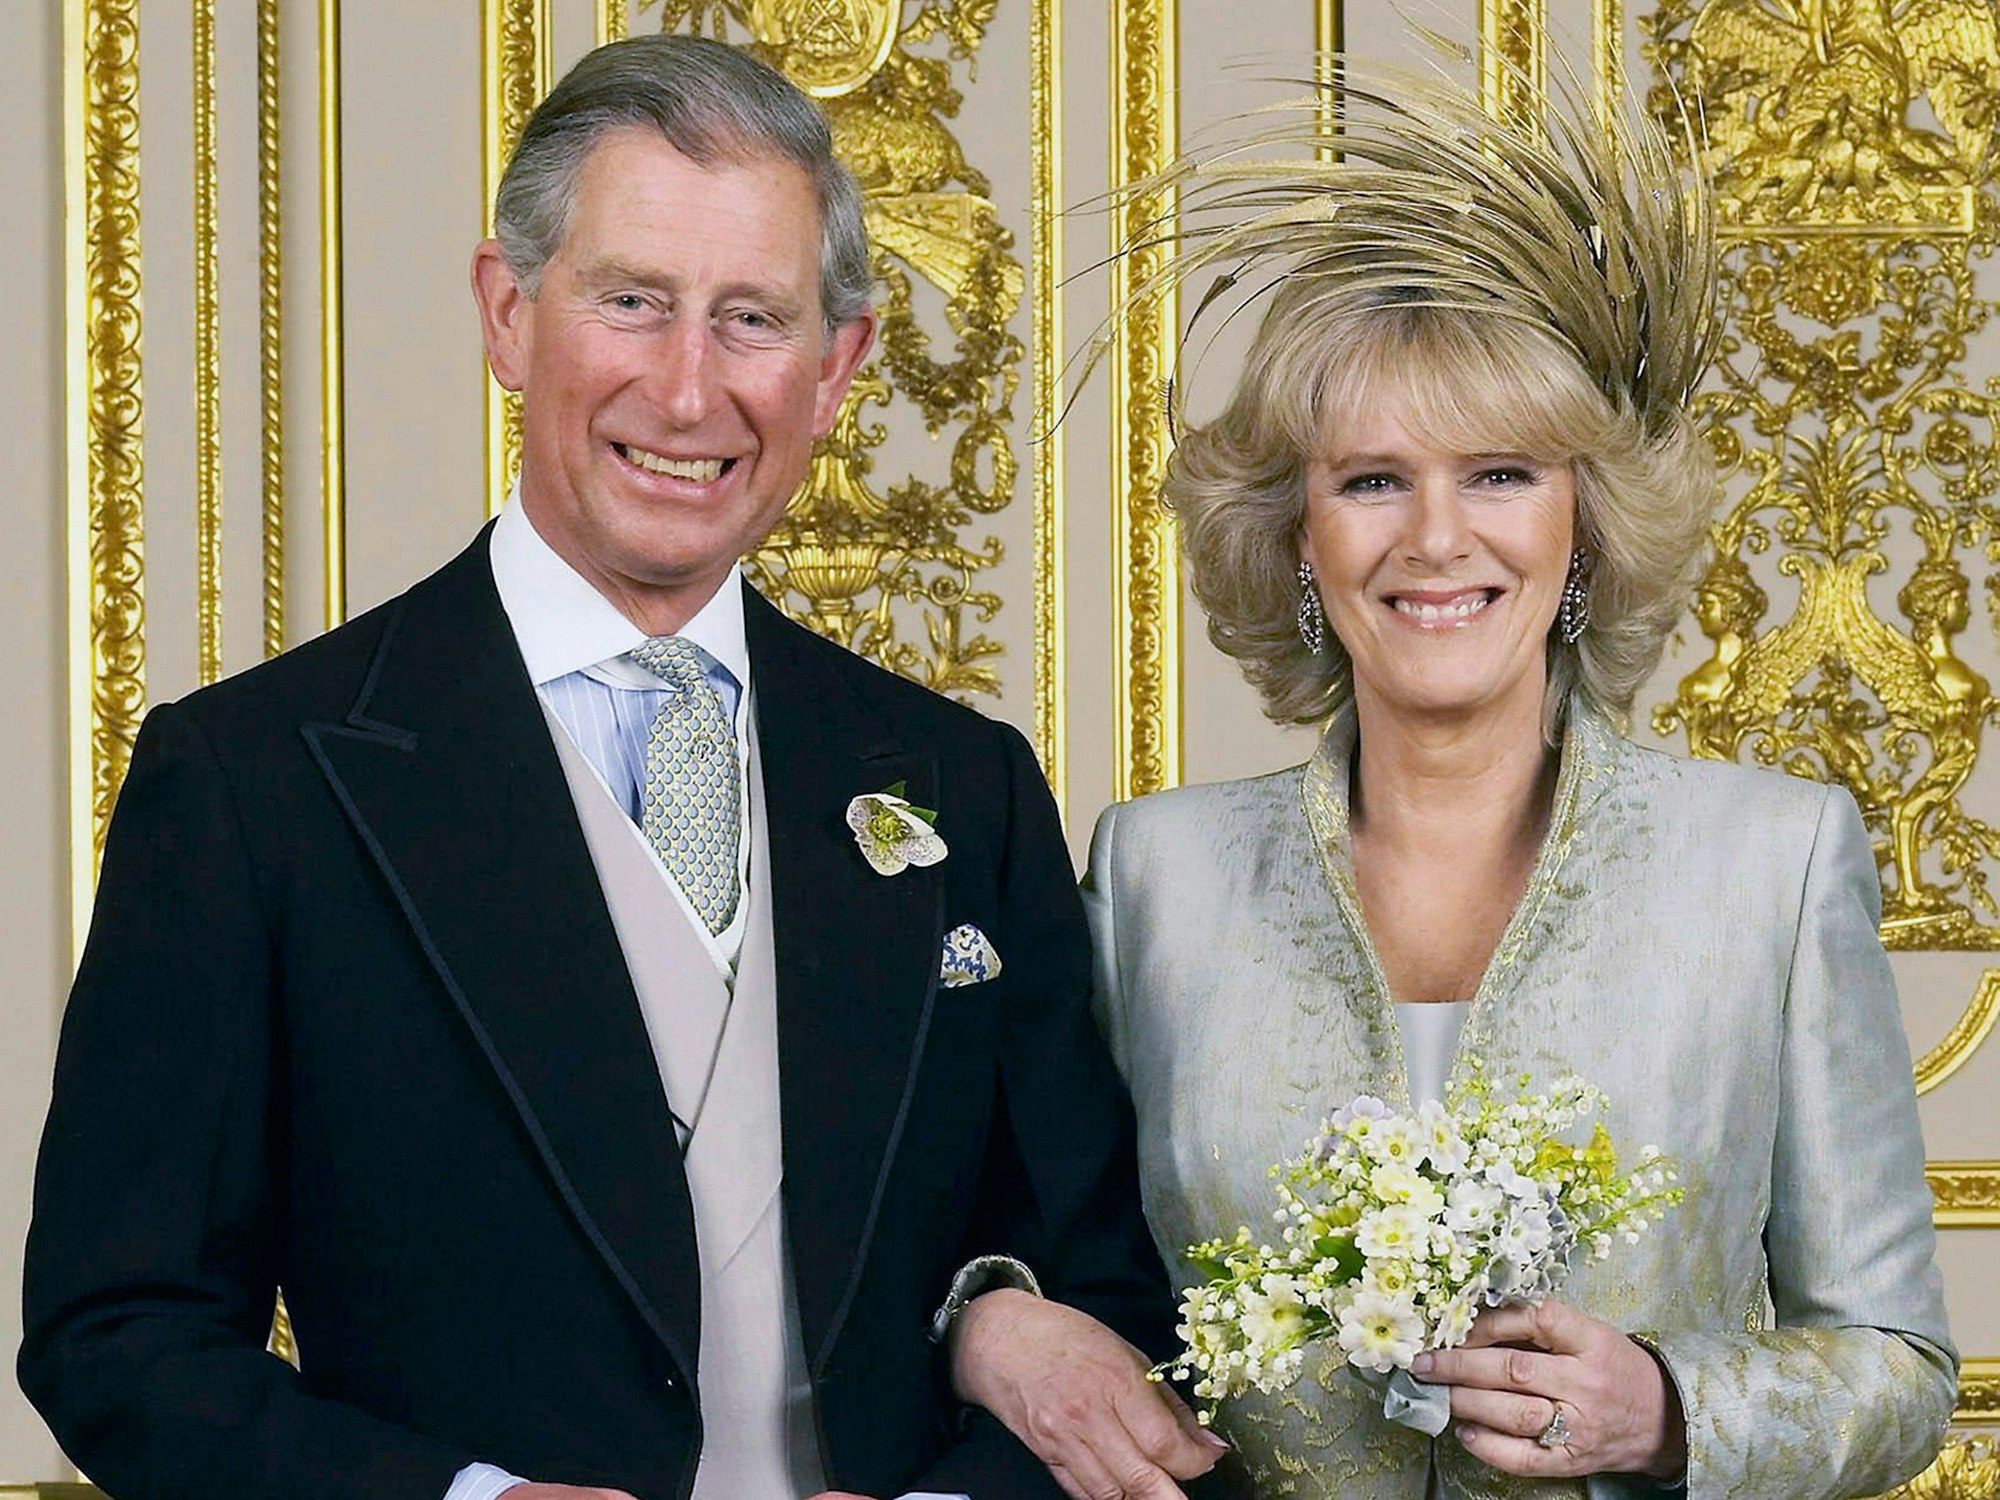 König Charles III. und Camilla, seine Königsgemahlin, nach der standesamtlichen Trauung am 9. April 2005 in Windsor.